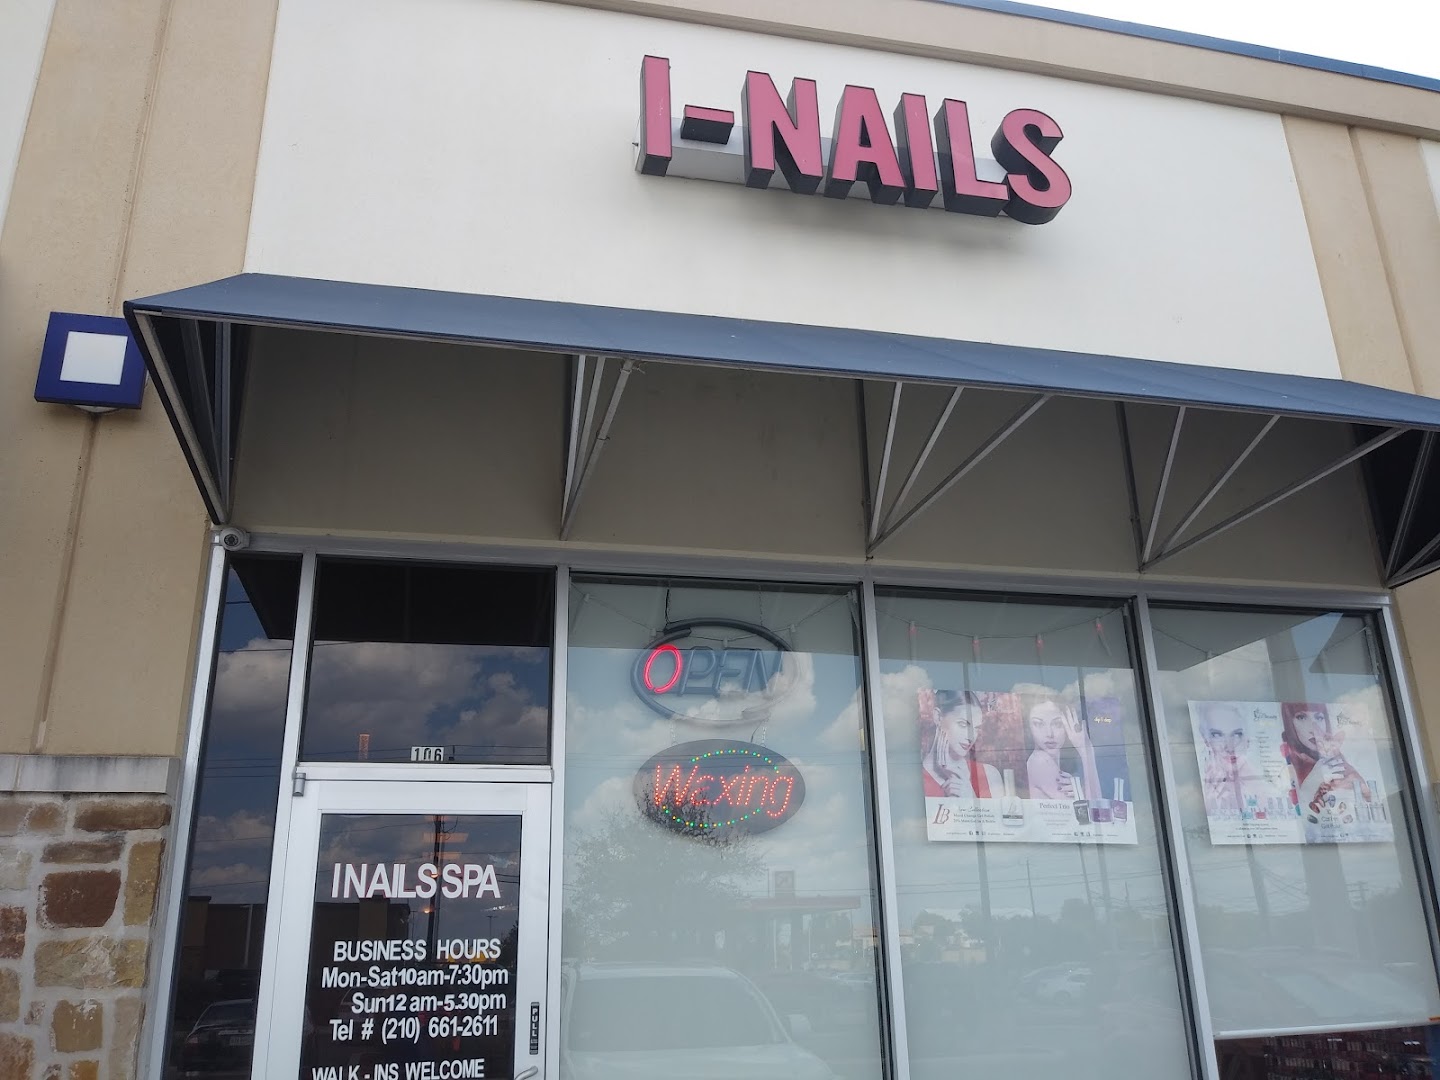 I-Nails